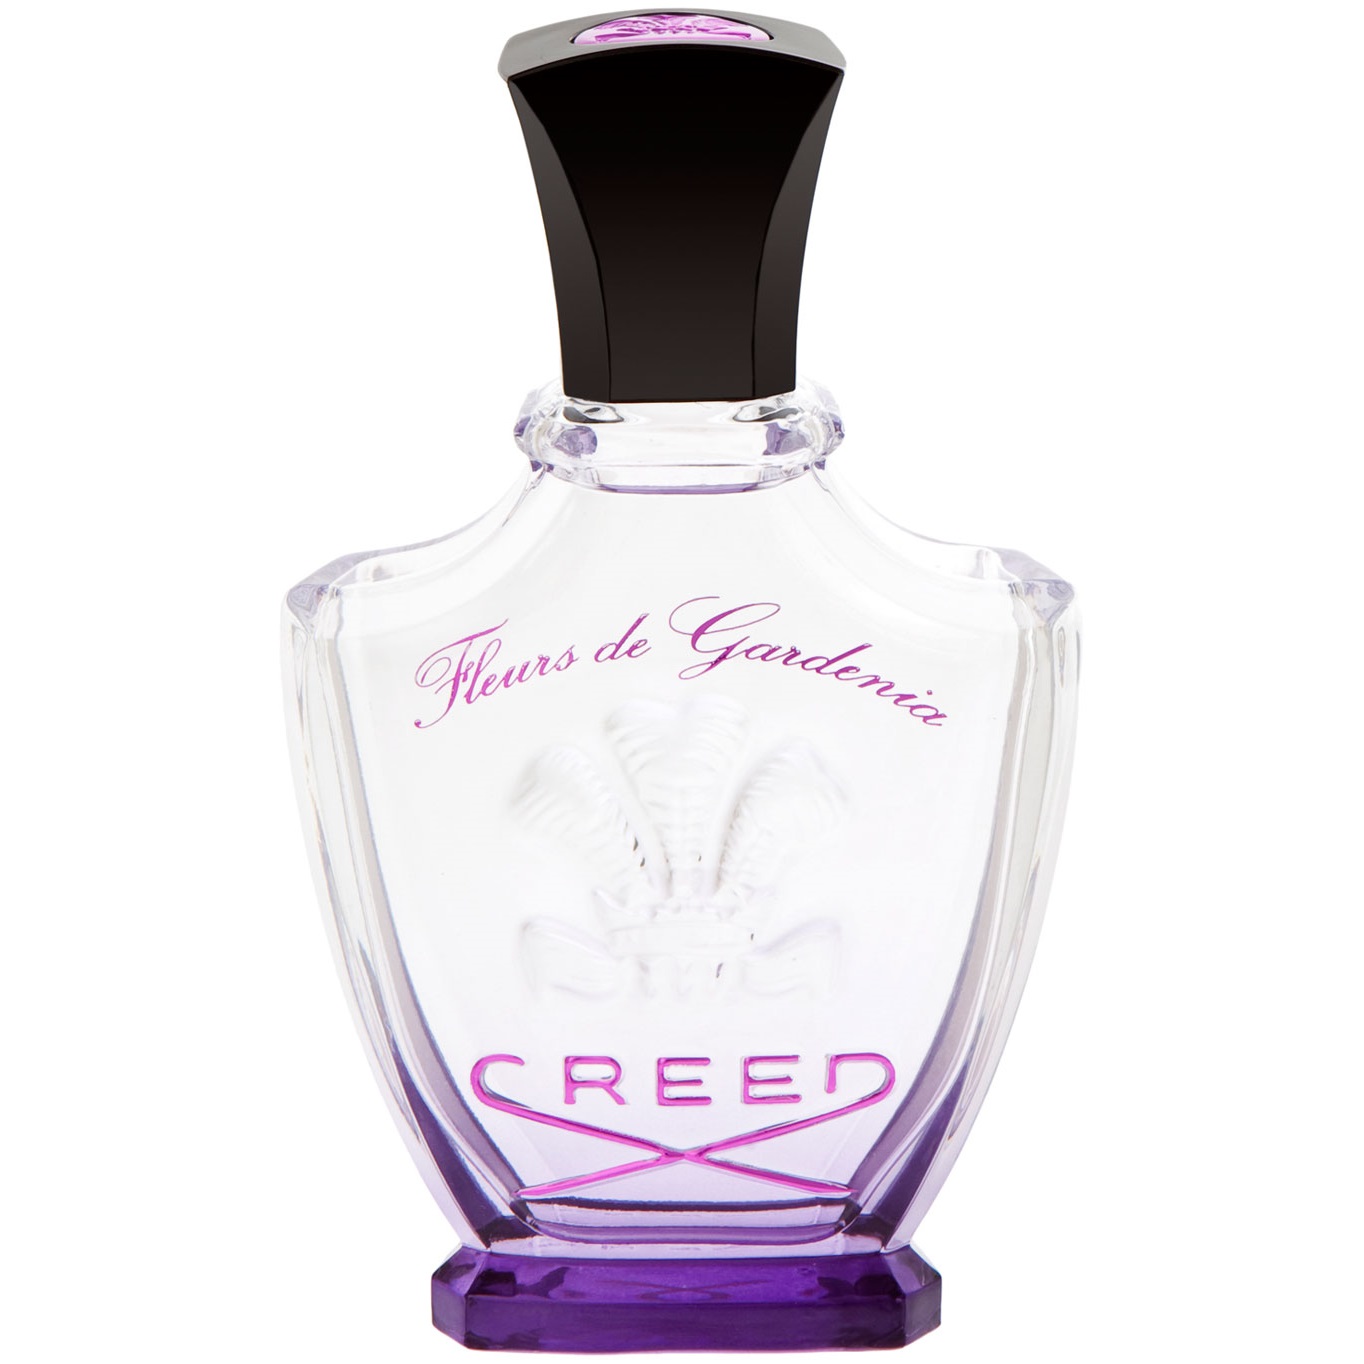 Creed - Fleurs de Gardenia (2мл)